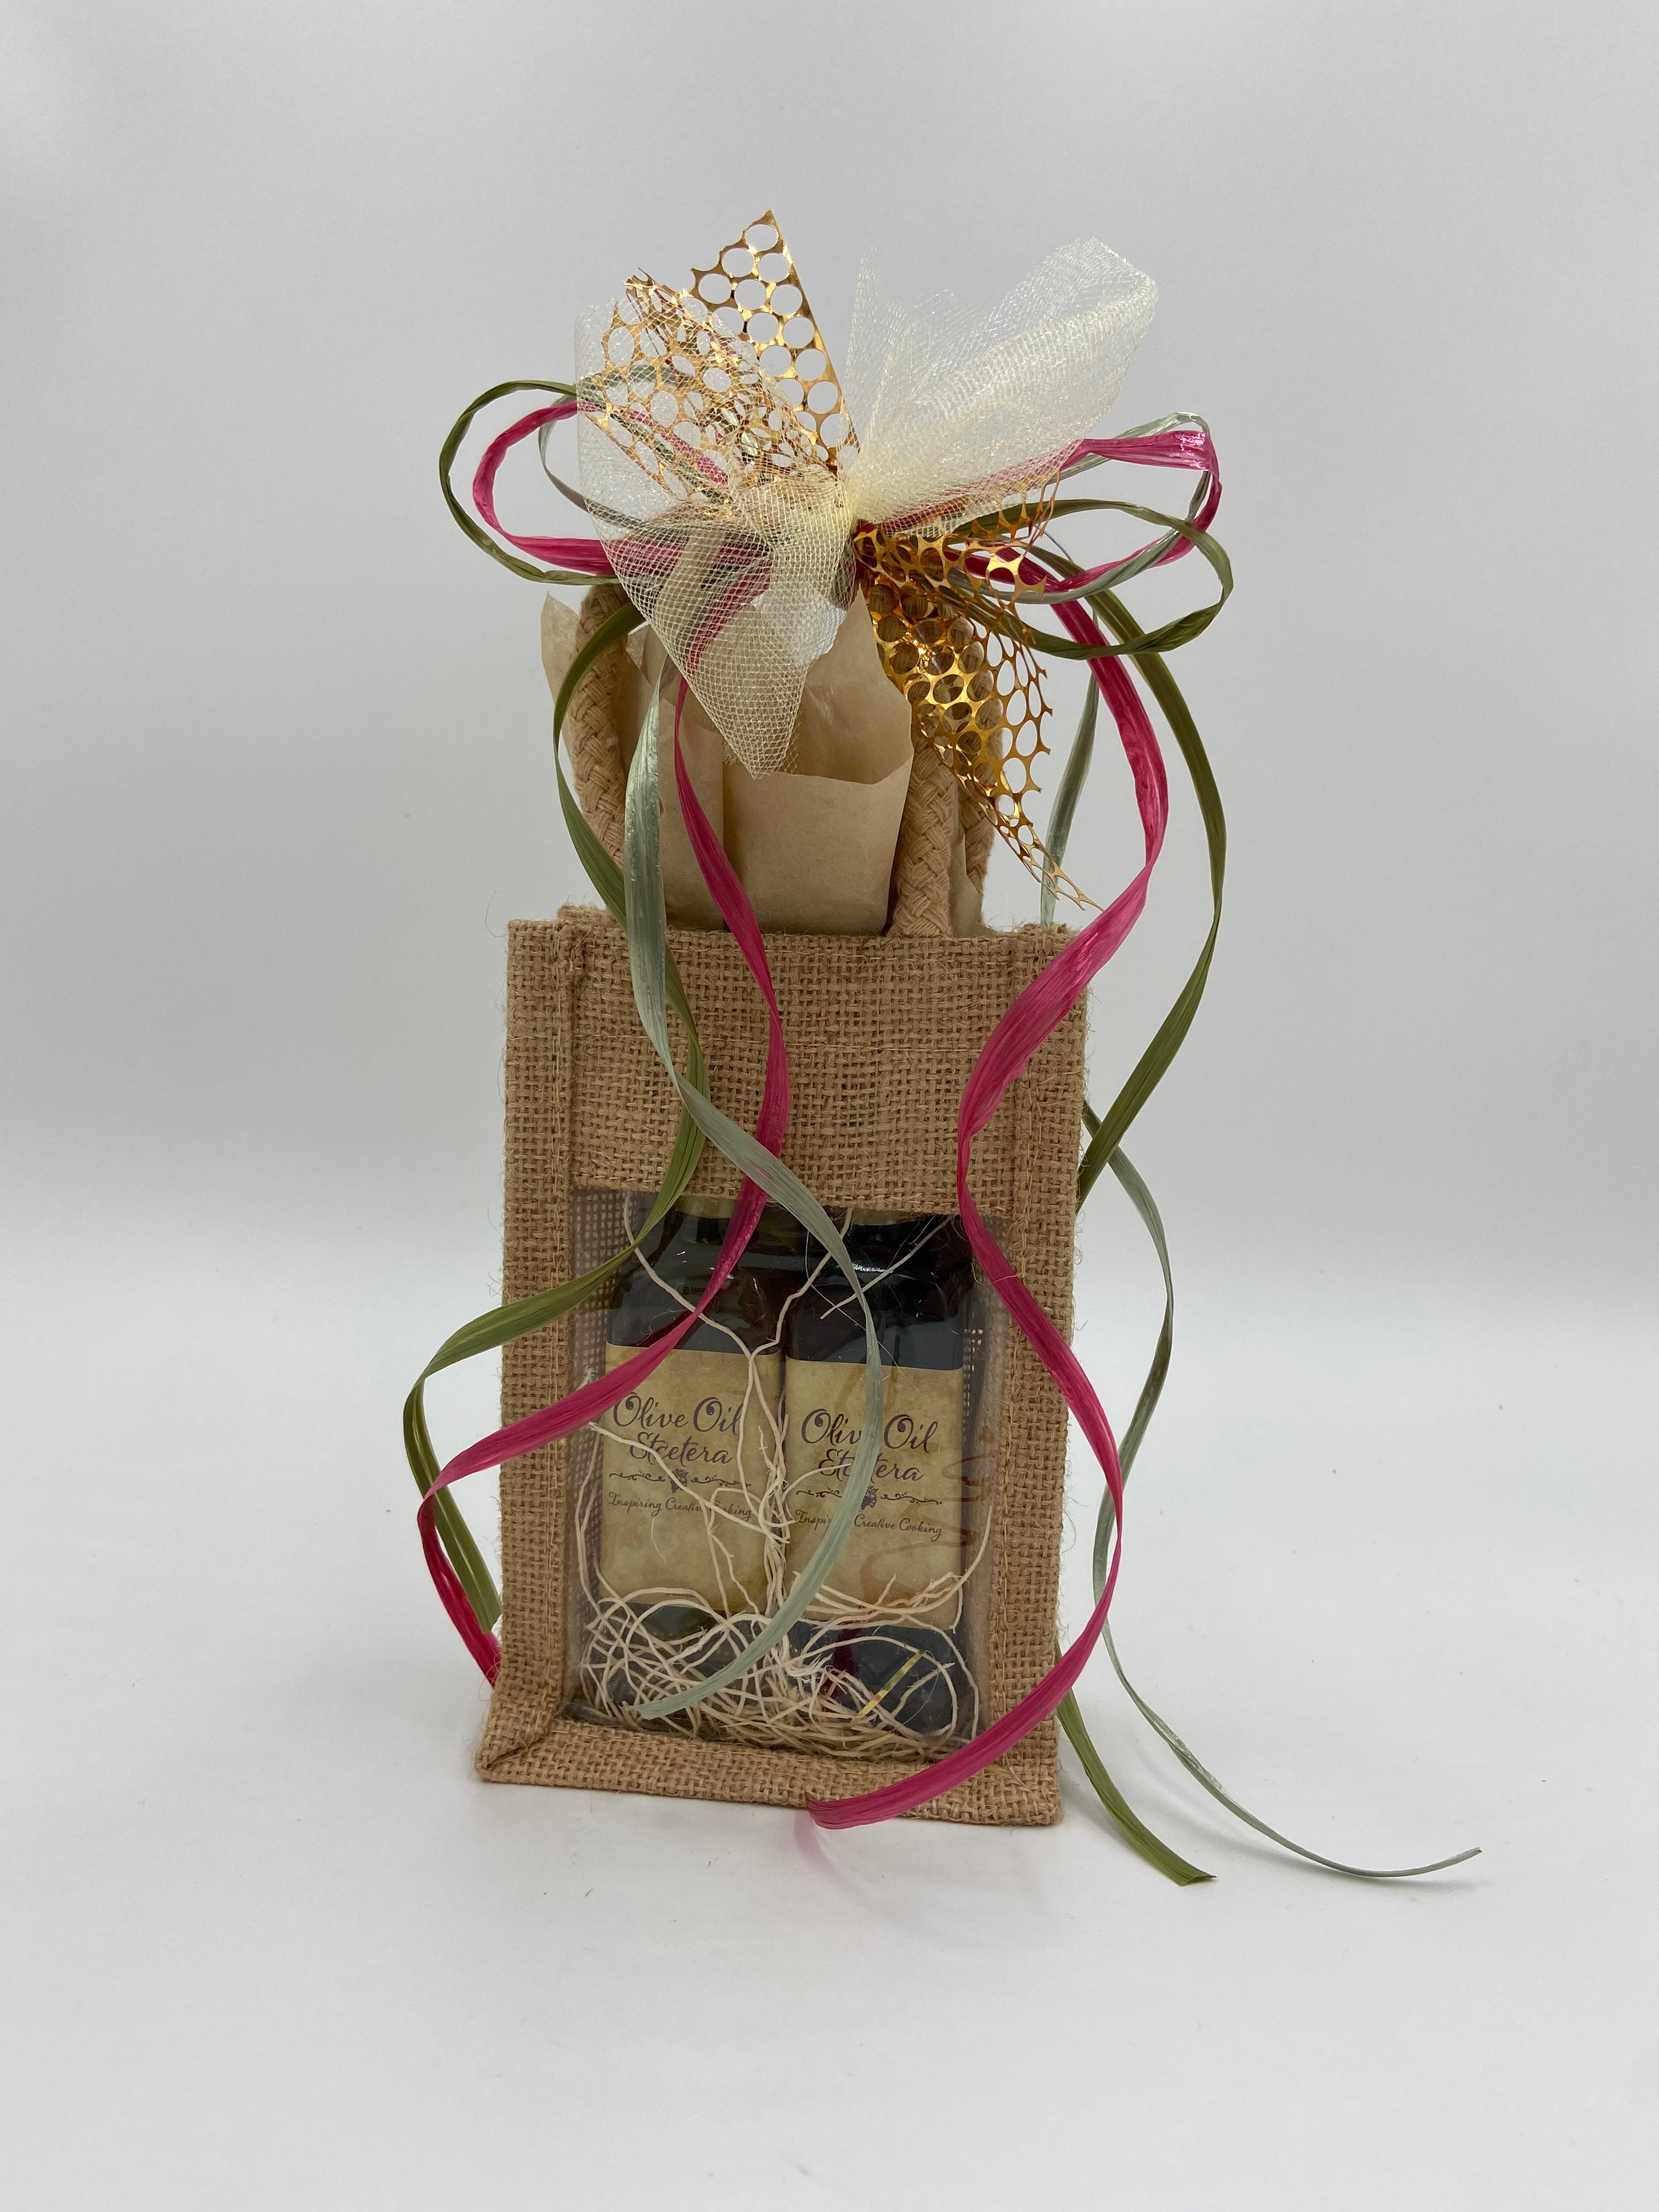 Holiday Sampler Gift - Olive Oil Etcetera